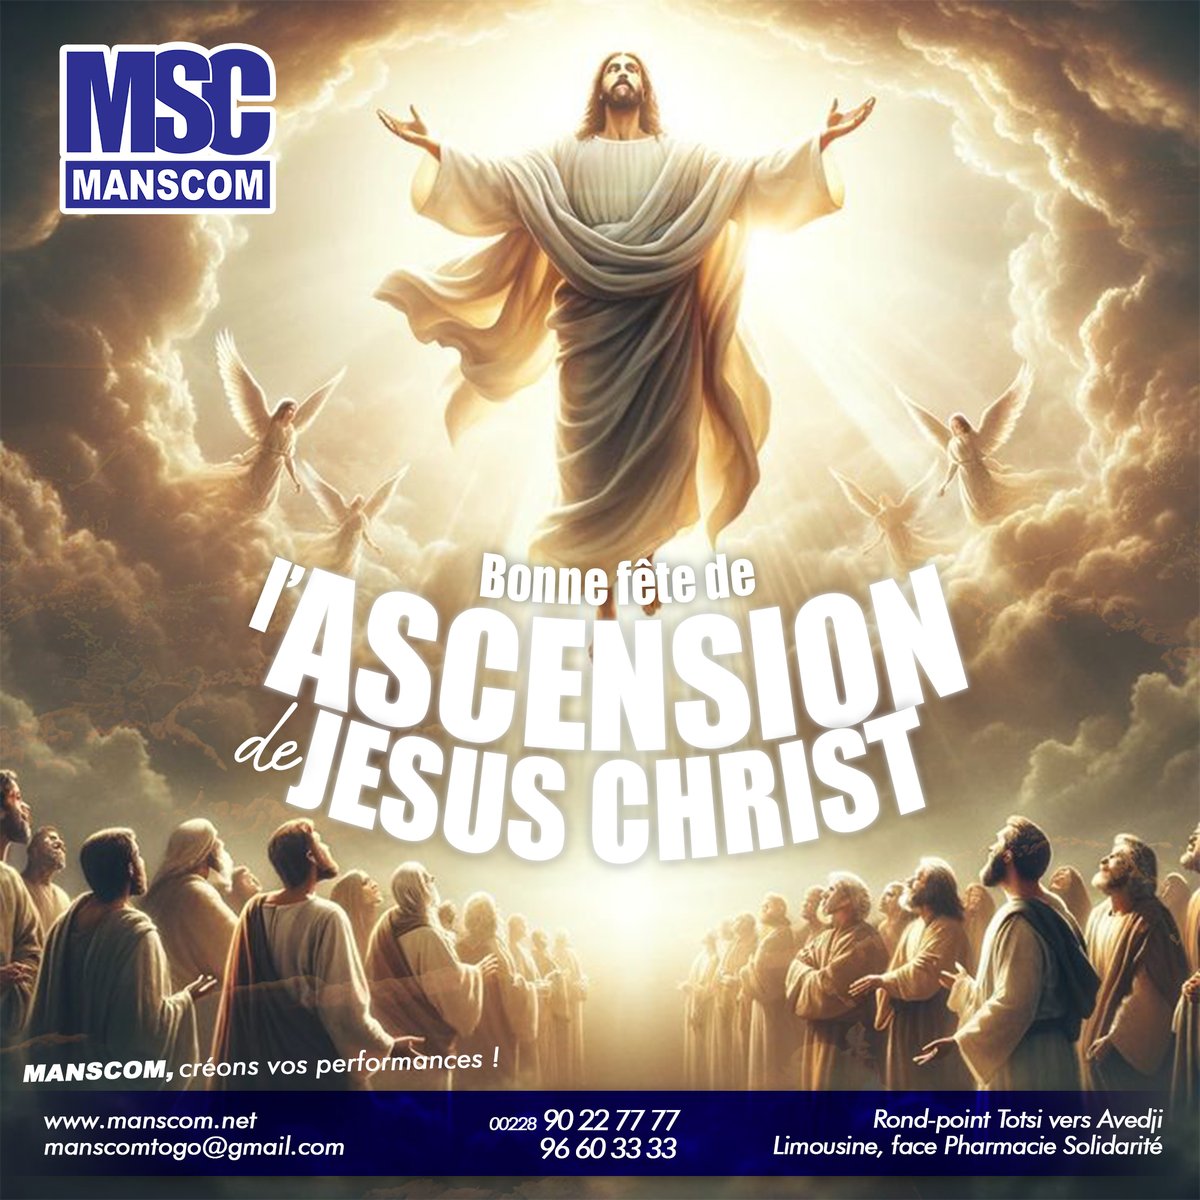 En ce jour béni de l'Ascension, Manscom souhaite à toute la communauté chrétienne une fête emplie de paix et de spiritualité. Que la grâce et la lumière divine du Christ vous accompagne aujourd'hui et toujours.
#BonneFête #Ascension #Manscom